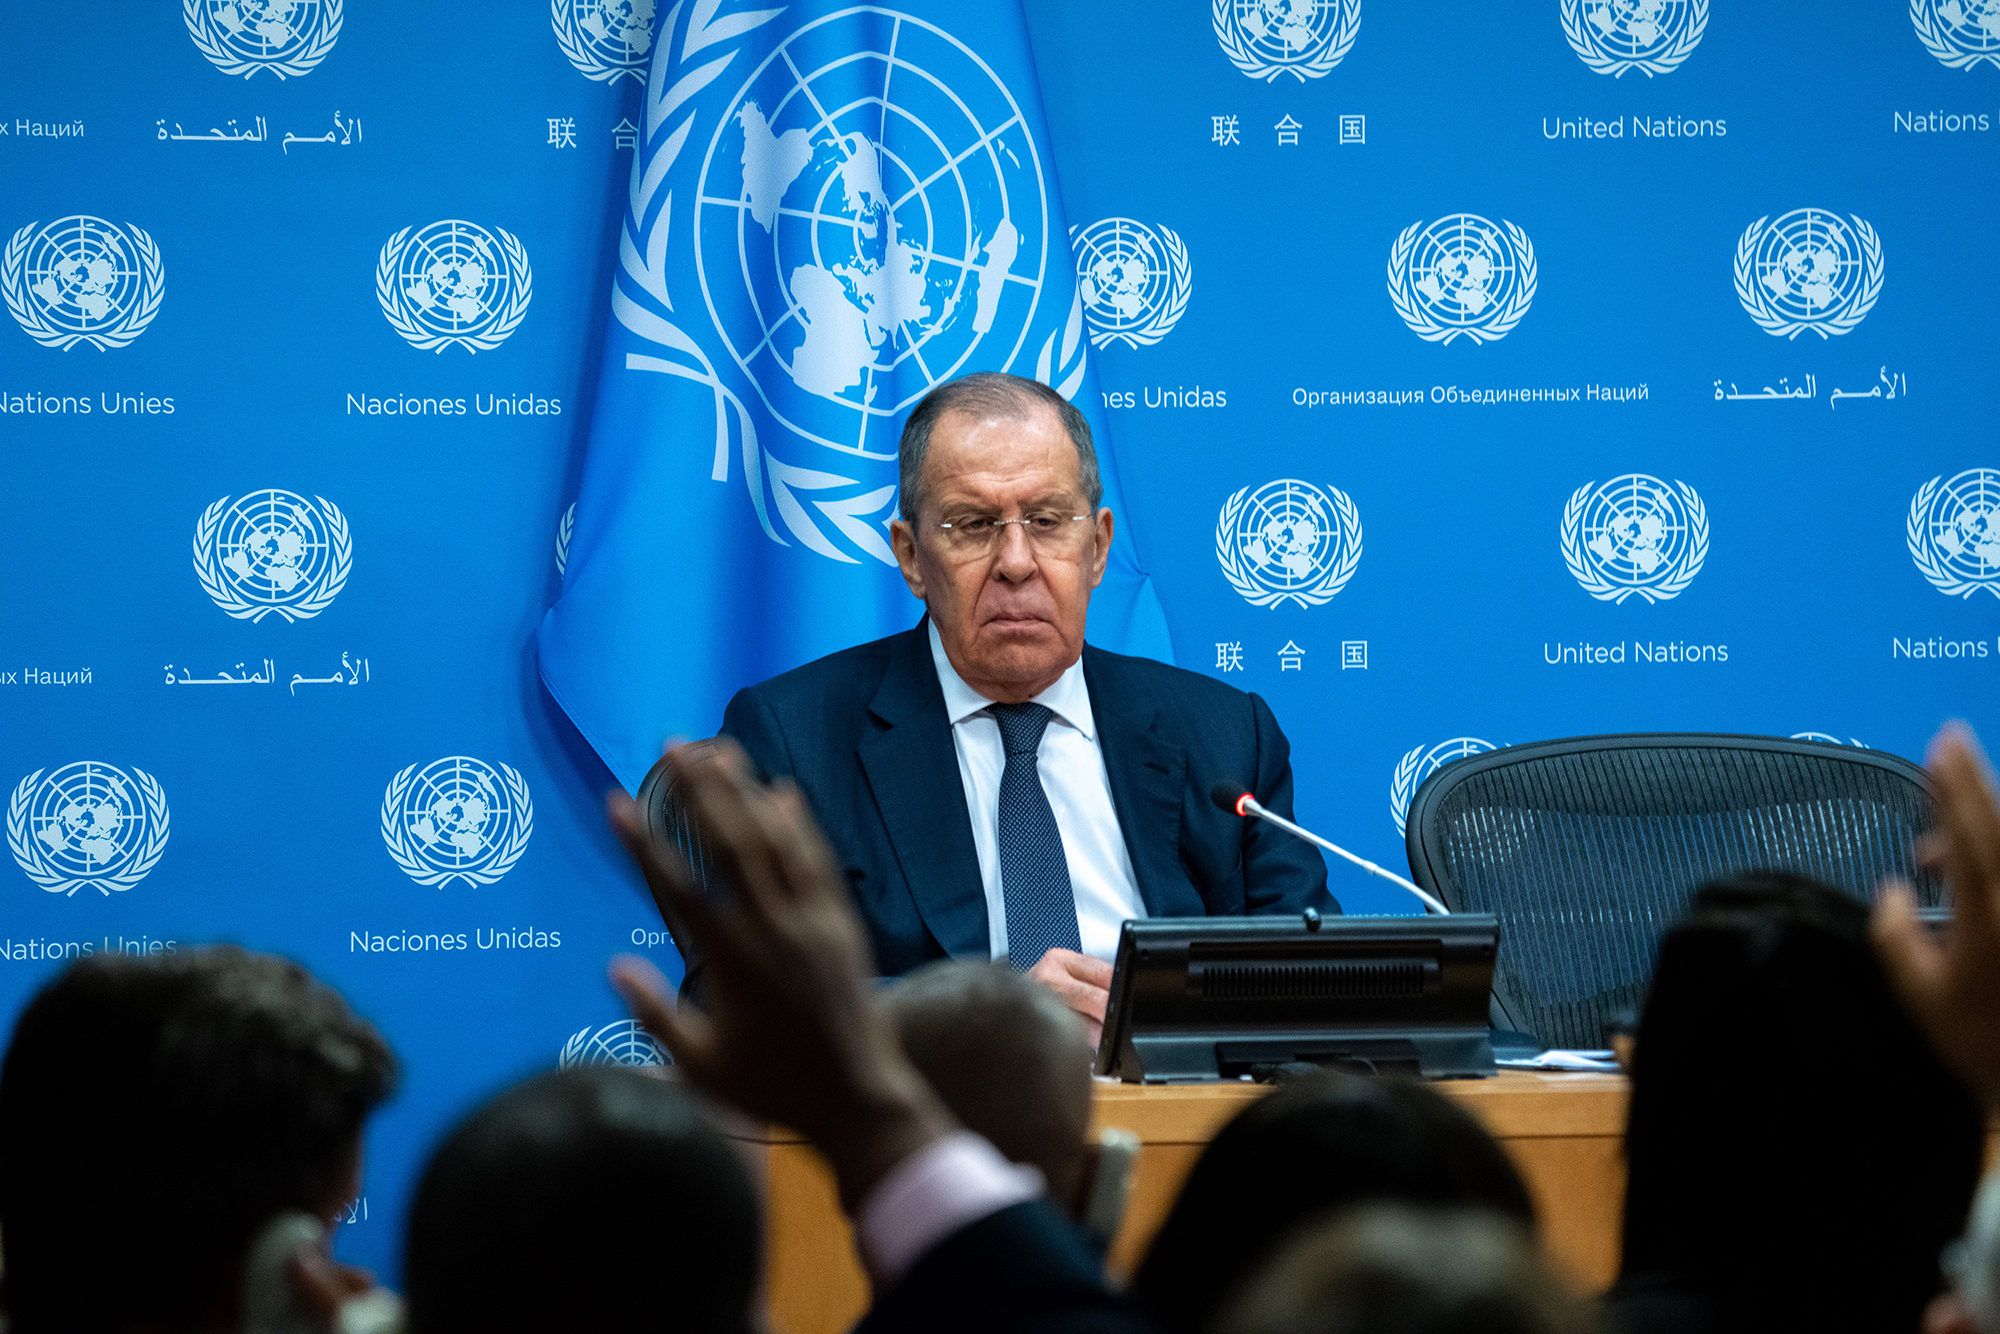 El ministro ruso de Relaciones Exteriores, Sergey Lavrov, durante una conferencia de prensa en el marco de la Asamblea General de las Naciones Unidas. (Crédito: David Dee Delgado/Getty Images)